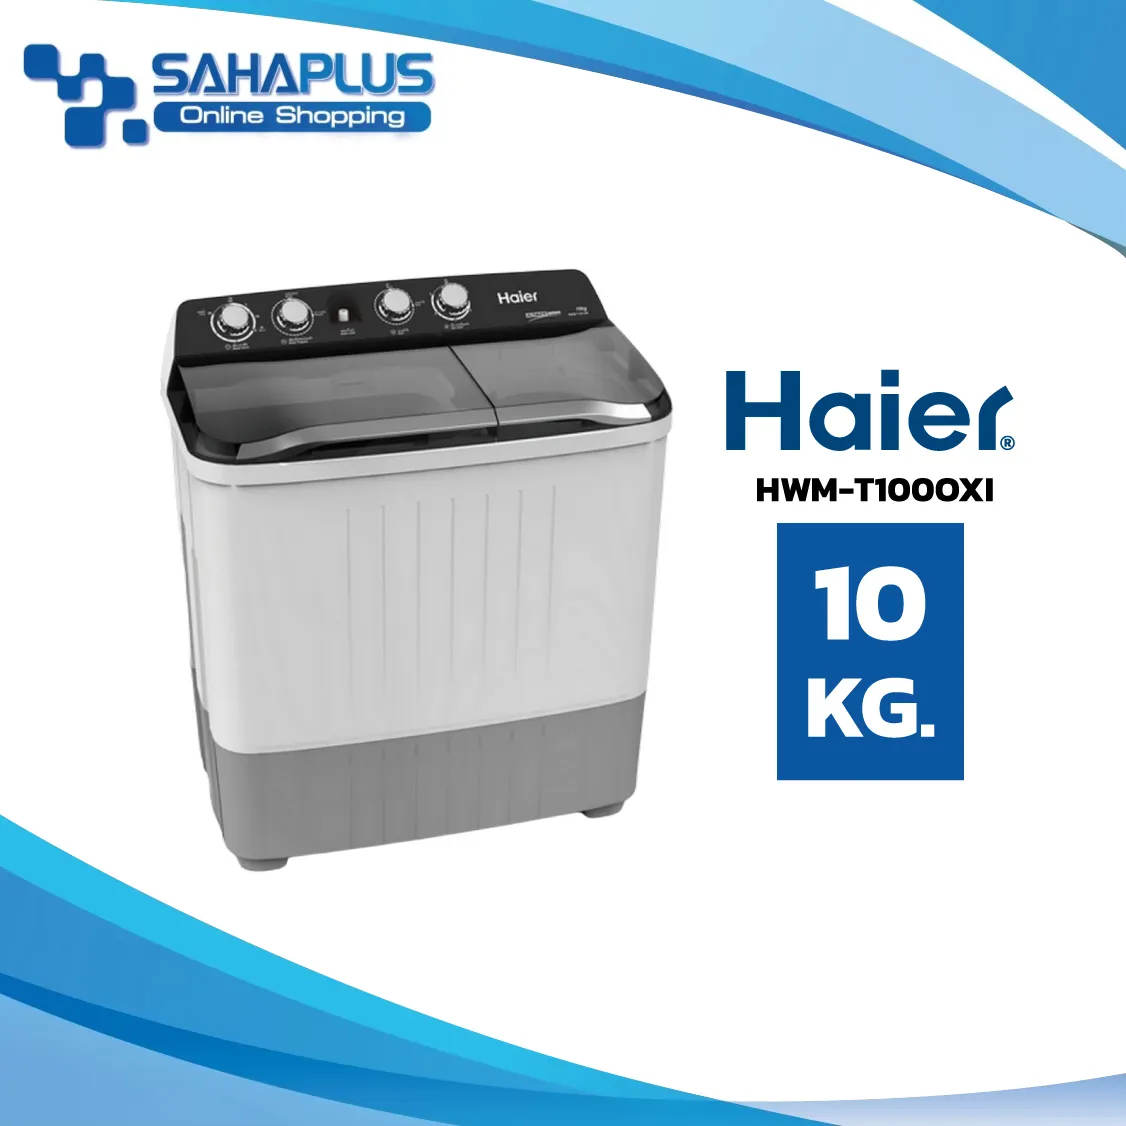 เครื่องซักผ้า 2 ถัง Haier รุ่น HWM-T100 OXI / HWM-T100OXI ขนาด 10Kg. ถังปั่น 6.5Kg. (รับประกันสินค้านาน 12 ปี)